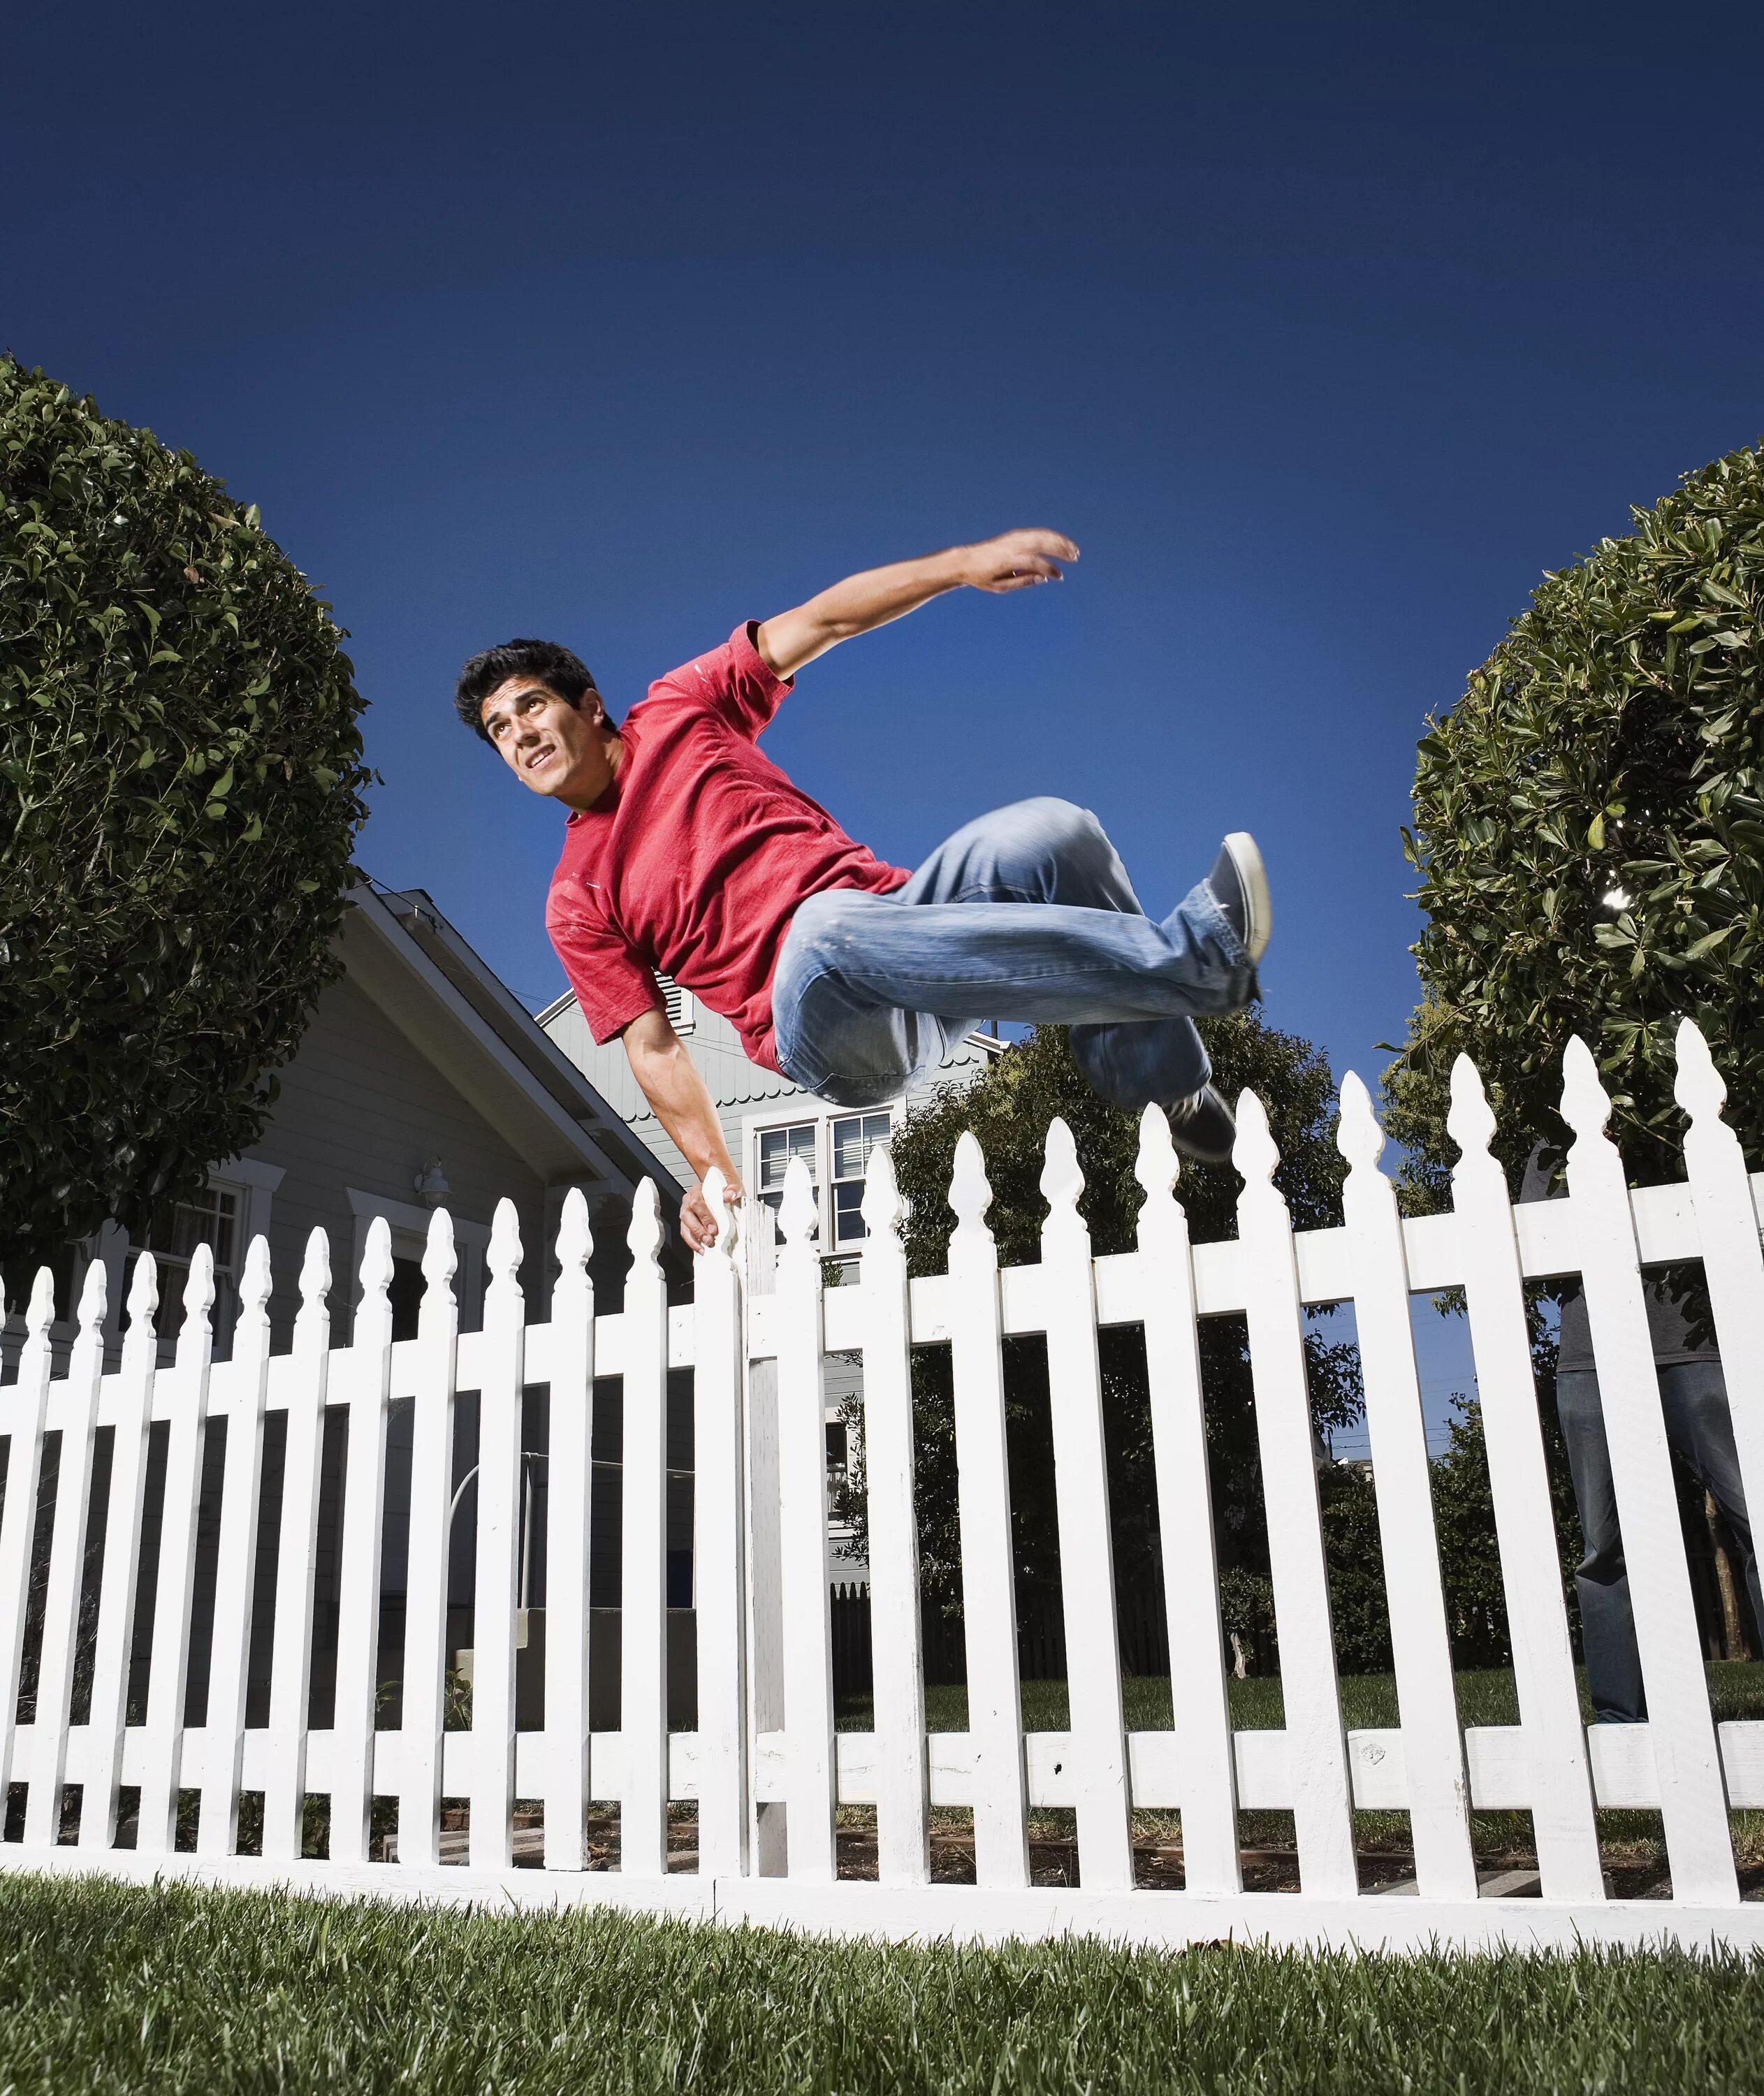 Манипуляция забор. Прыжок через забор. Человек перелезает через забор. Прыгает через забор. Человек перепрыгивает забор.